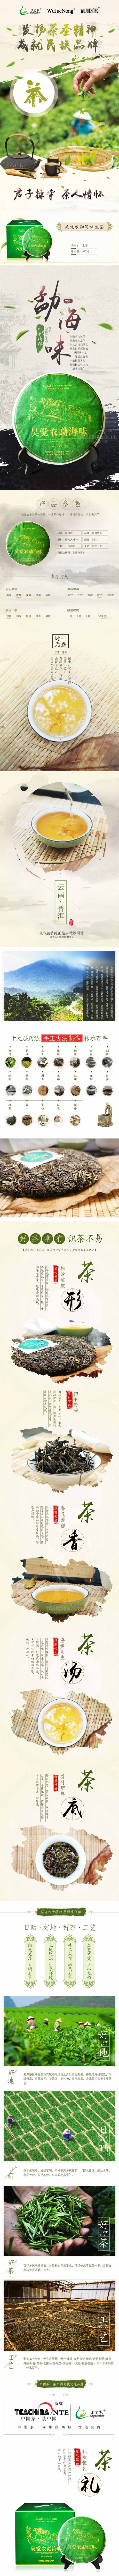 吴觉农勐海味普洱生茶(图1)